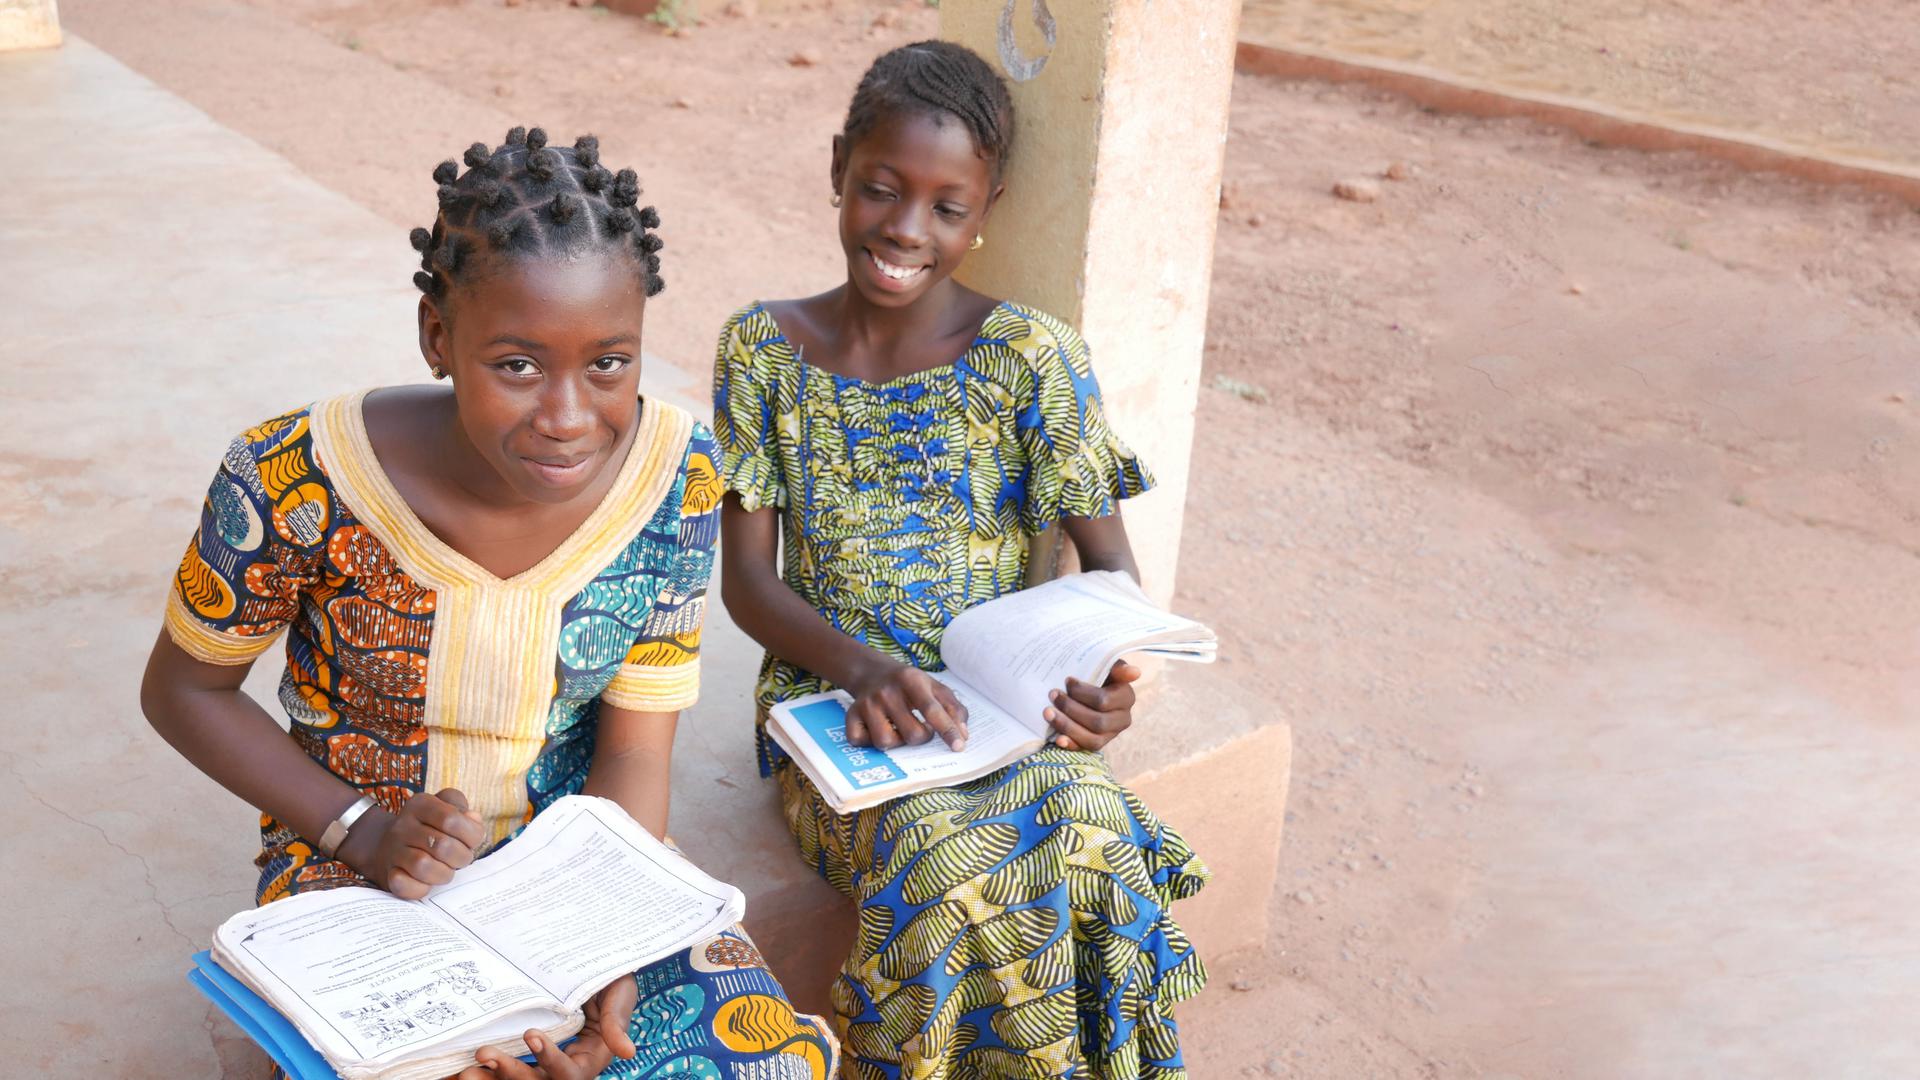 Optimistisch in die Zukunft: Im Zentrum Jigiya Bon Bamako in Malis Hauptstadt bekommen Mädchen eine Chance auf eine bessere Zukunft. Sie können nicht nur zur Schule gehen, sie lernen dort auch, auf eigenen Beinen zu stehen. Seit 17 Jahren engagiert sich der Verein „Häuser der Hoffnung“ in dem westafrikanischen Land.